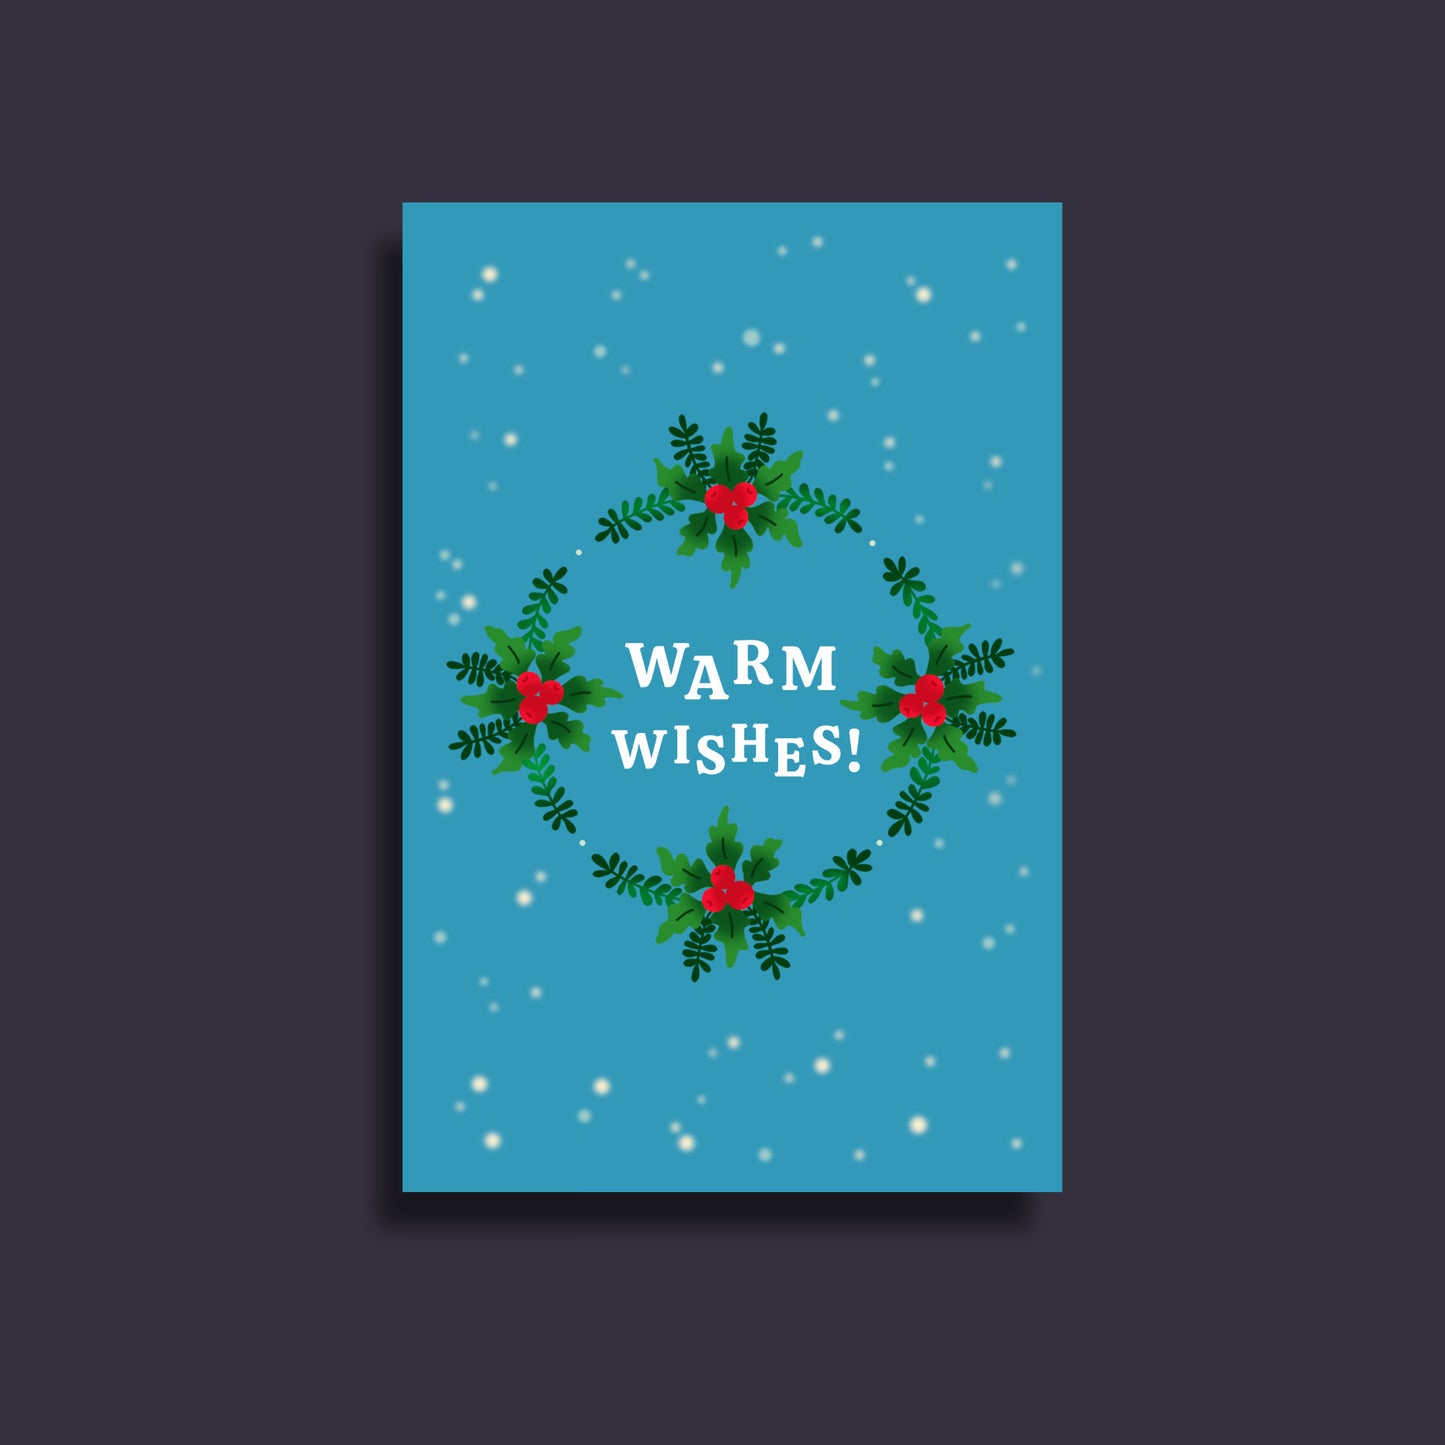 Warm wishes postcard